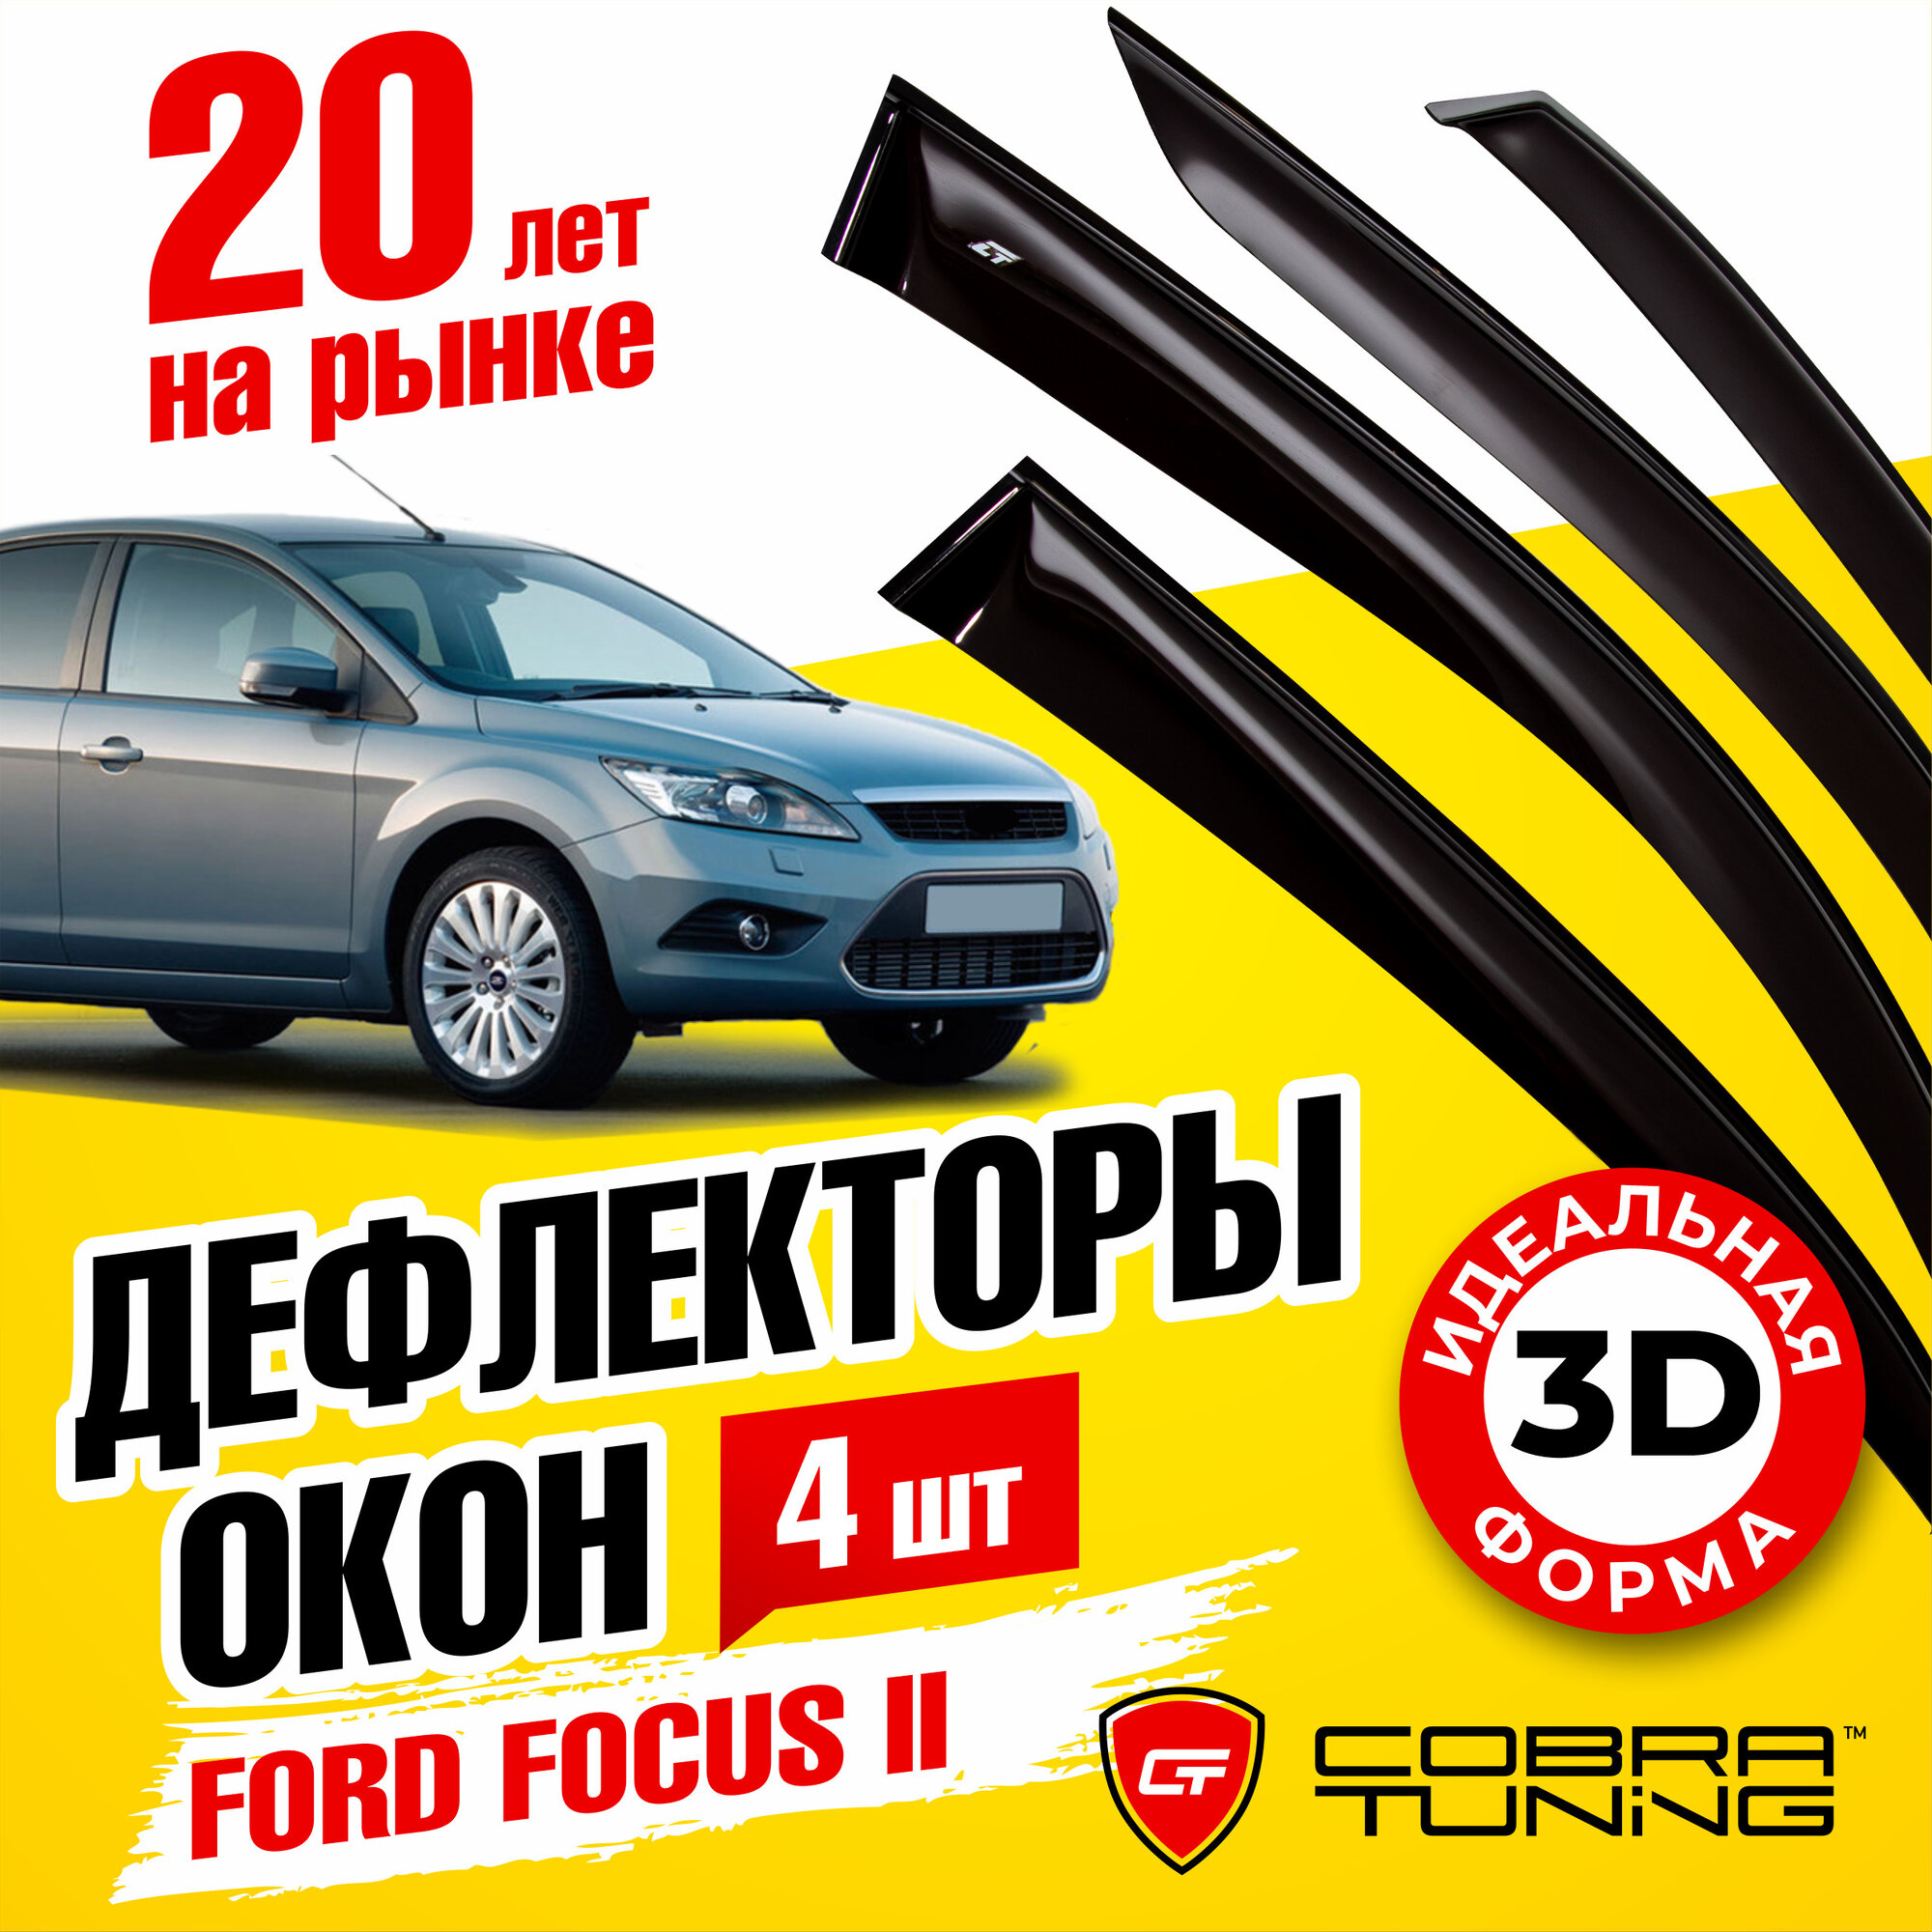 Дефлекторы боковых окон для Ford Focus II (Форд Фокус 2) седан хэтчбек 2004-2011 ветровики на двери автомобиля Cobra Tuning